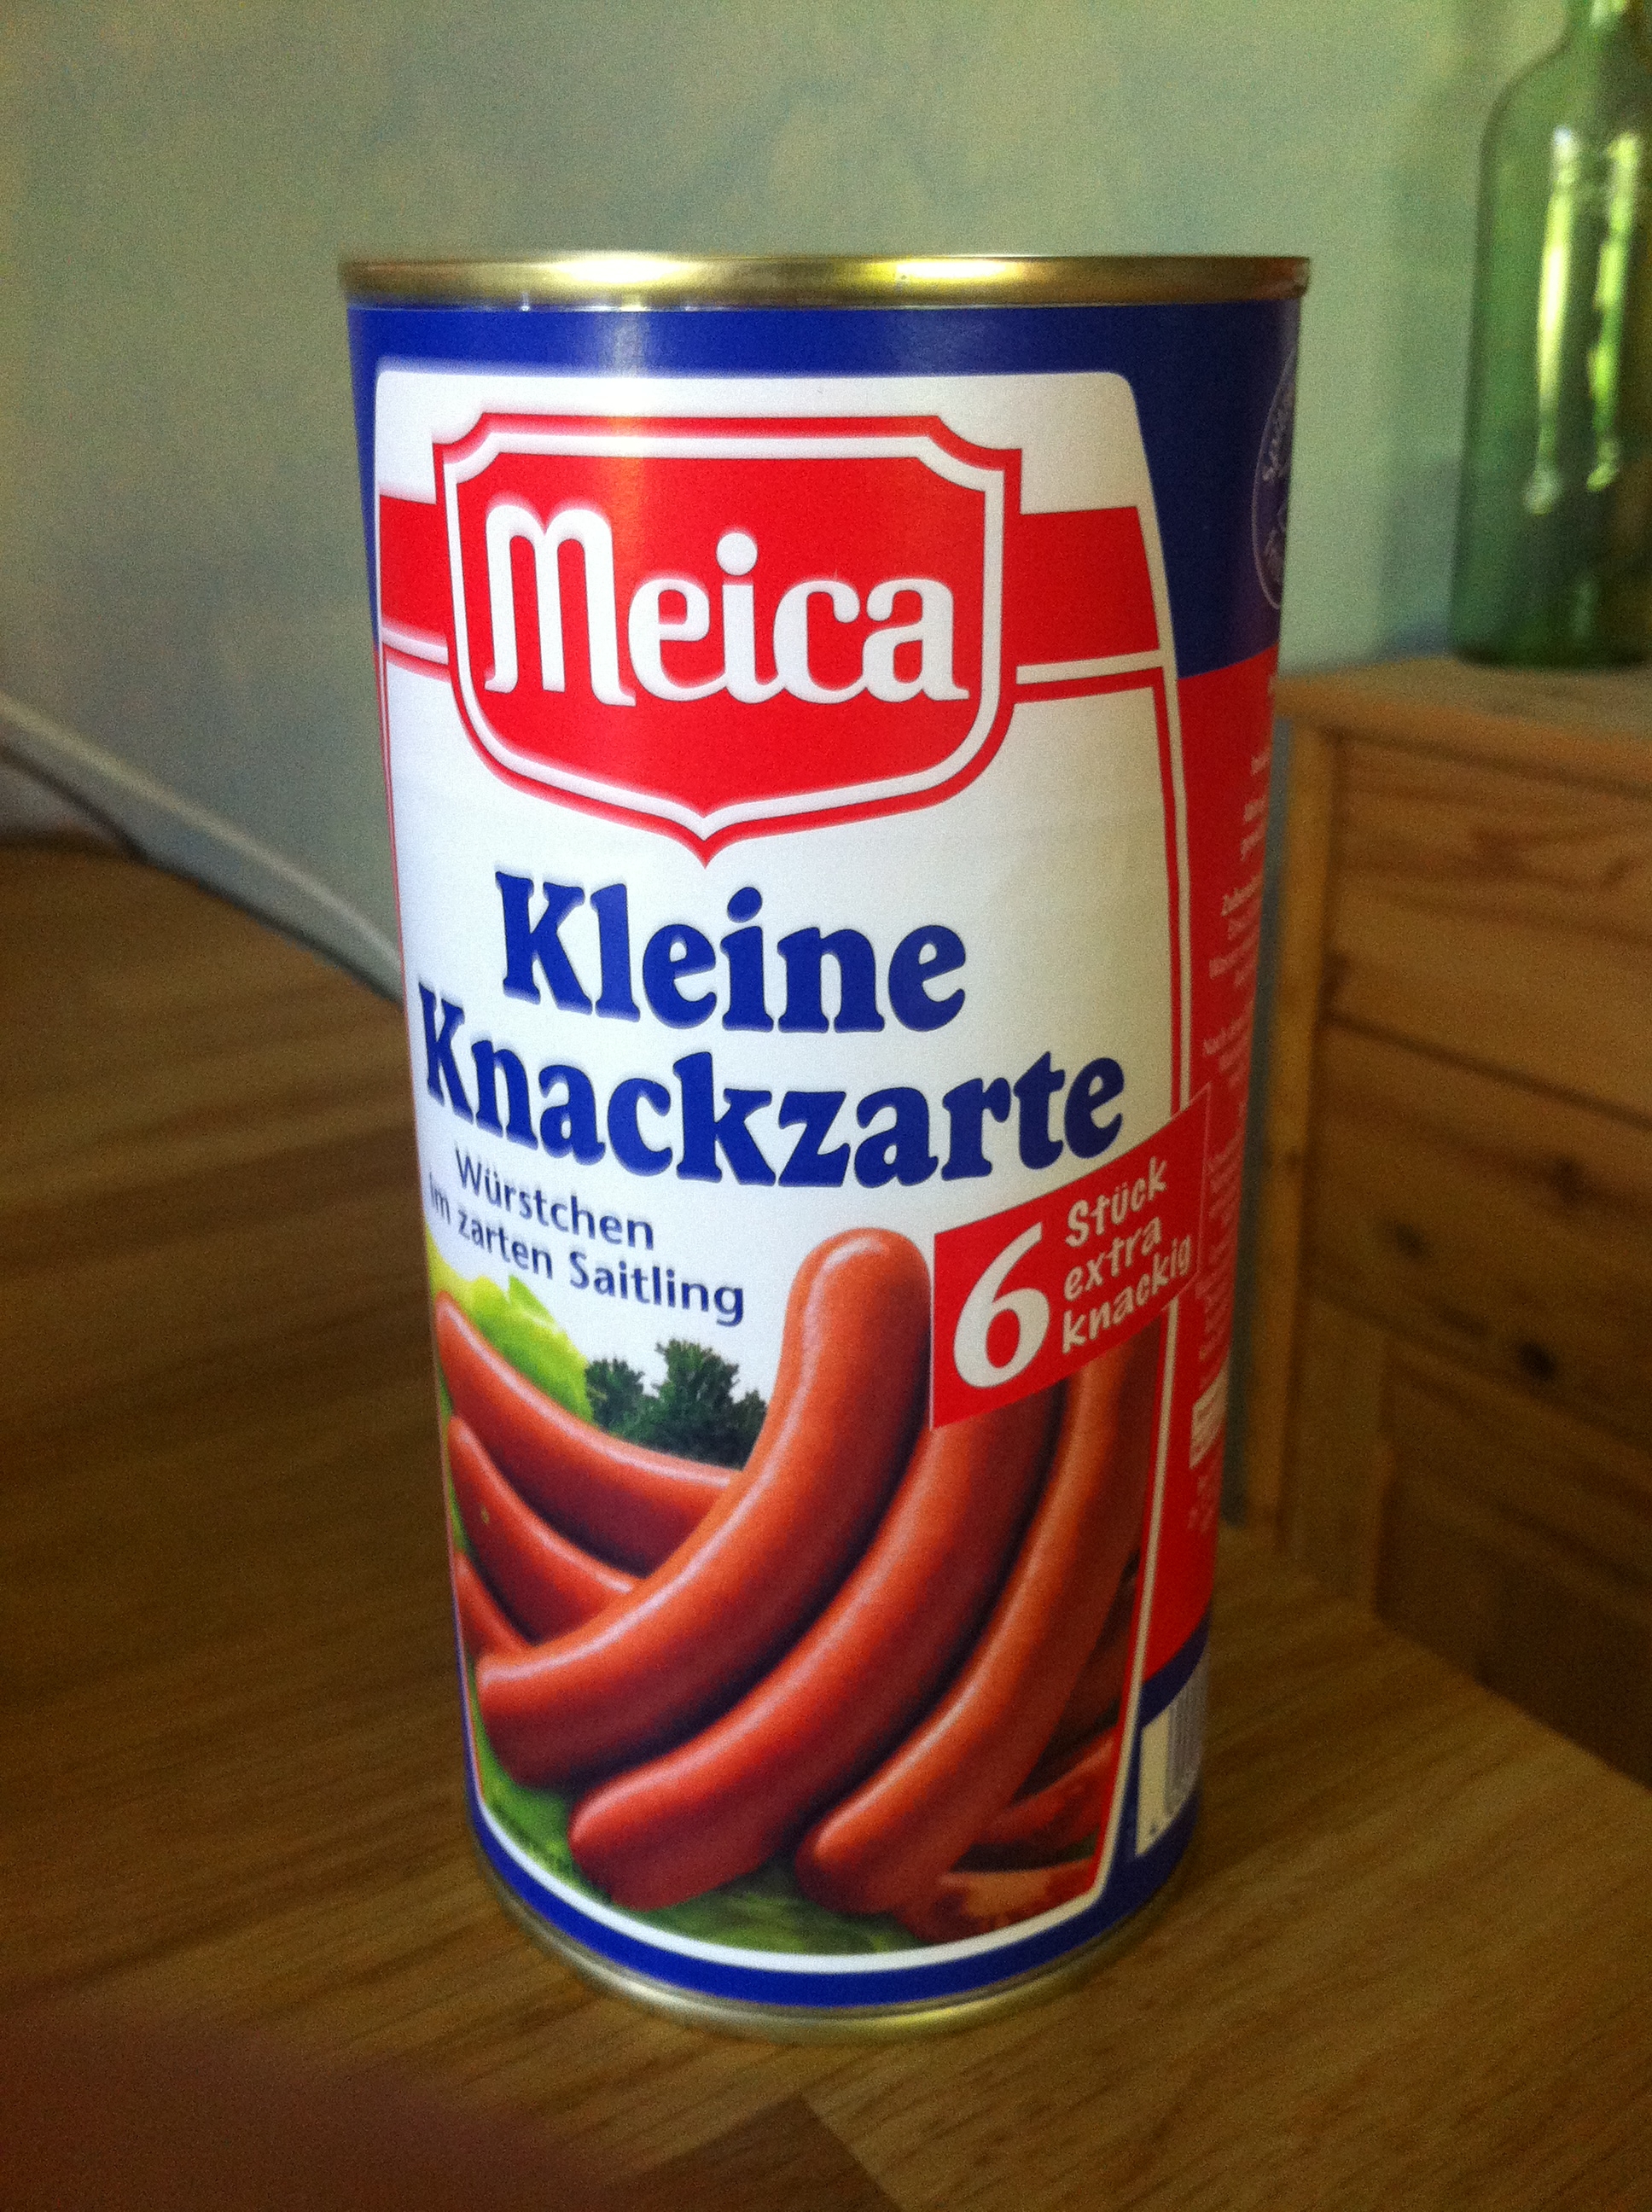 Meica - Kleine Knackzarte Würstchen